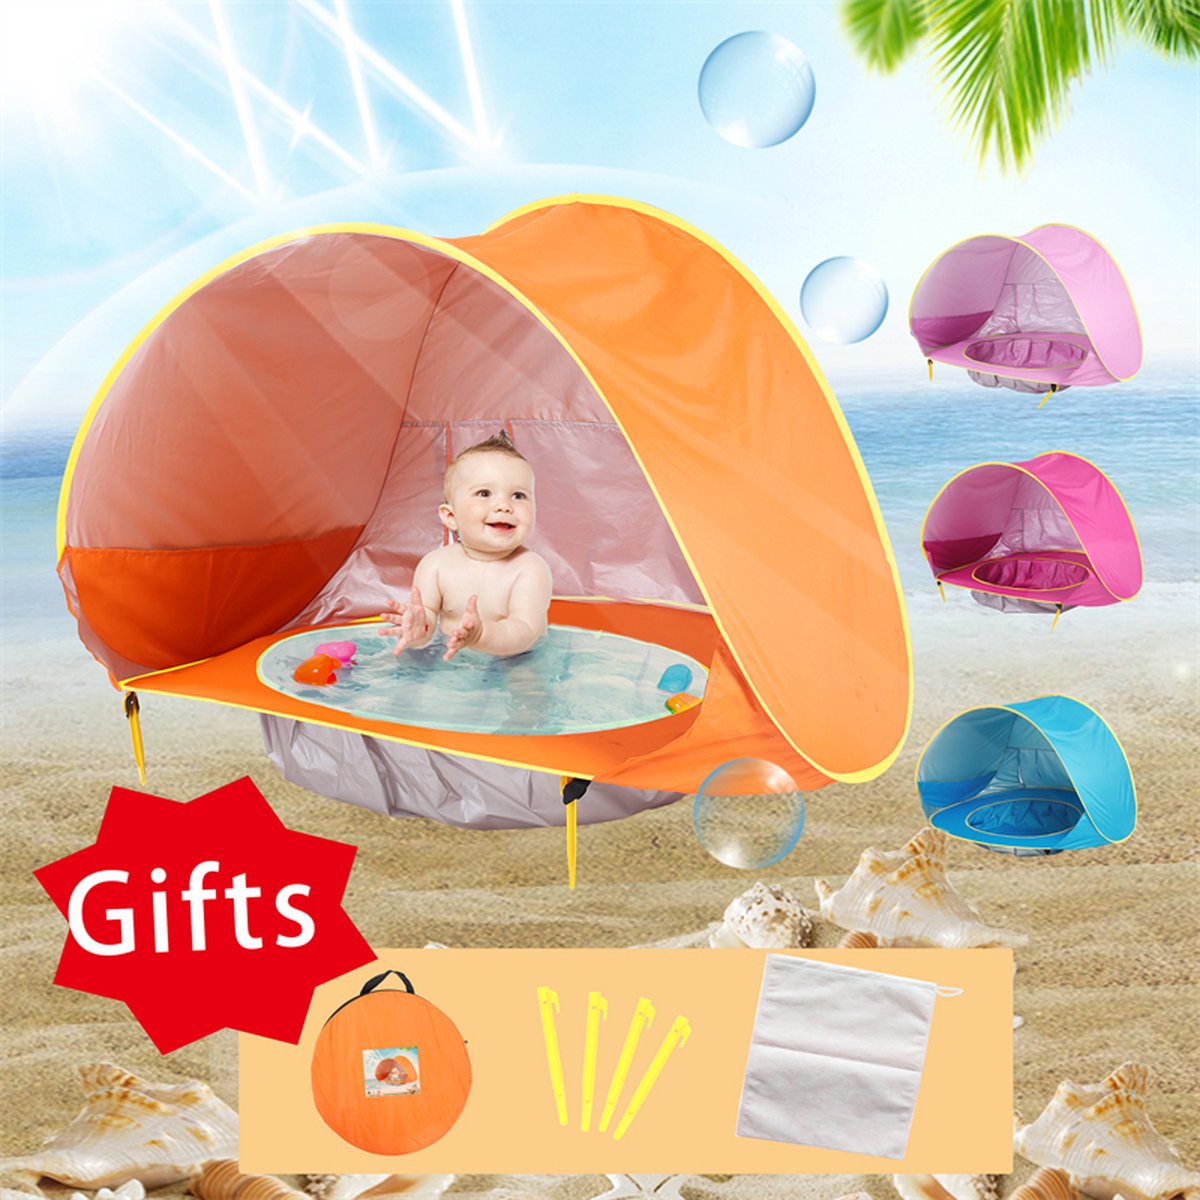 Baby Strandtent - Zonbescherming voor Baby - Afkoeling - Kleur: Oranje - Zon Bescherming Strand - Mini Zwembad met Zonbescherming - Baby Zwembad inclusief Zonnekap - Strandtentje voor Baby - UV Bescherming - Newborn - Compact & Gebruiksvriendelijk - Battoom